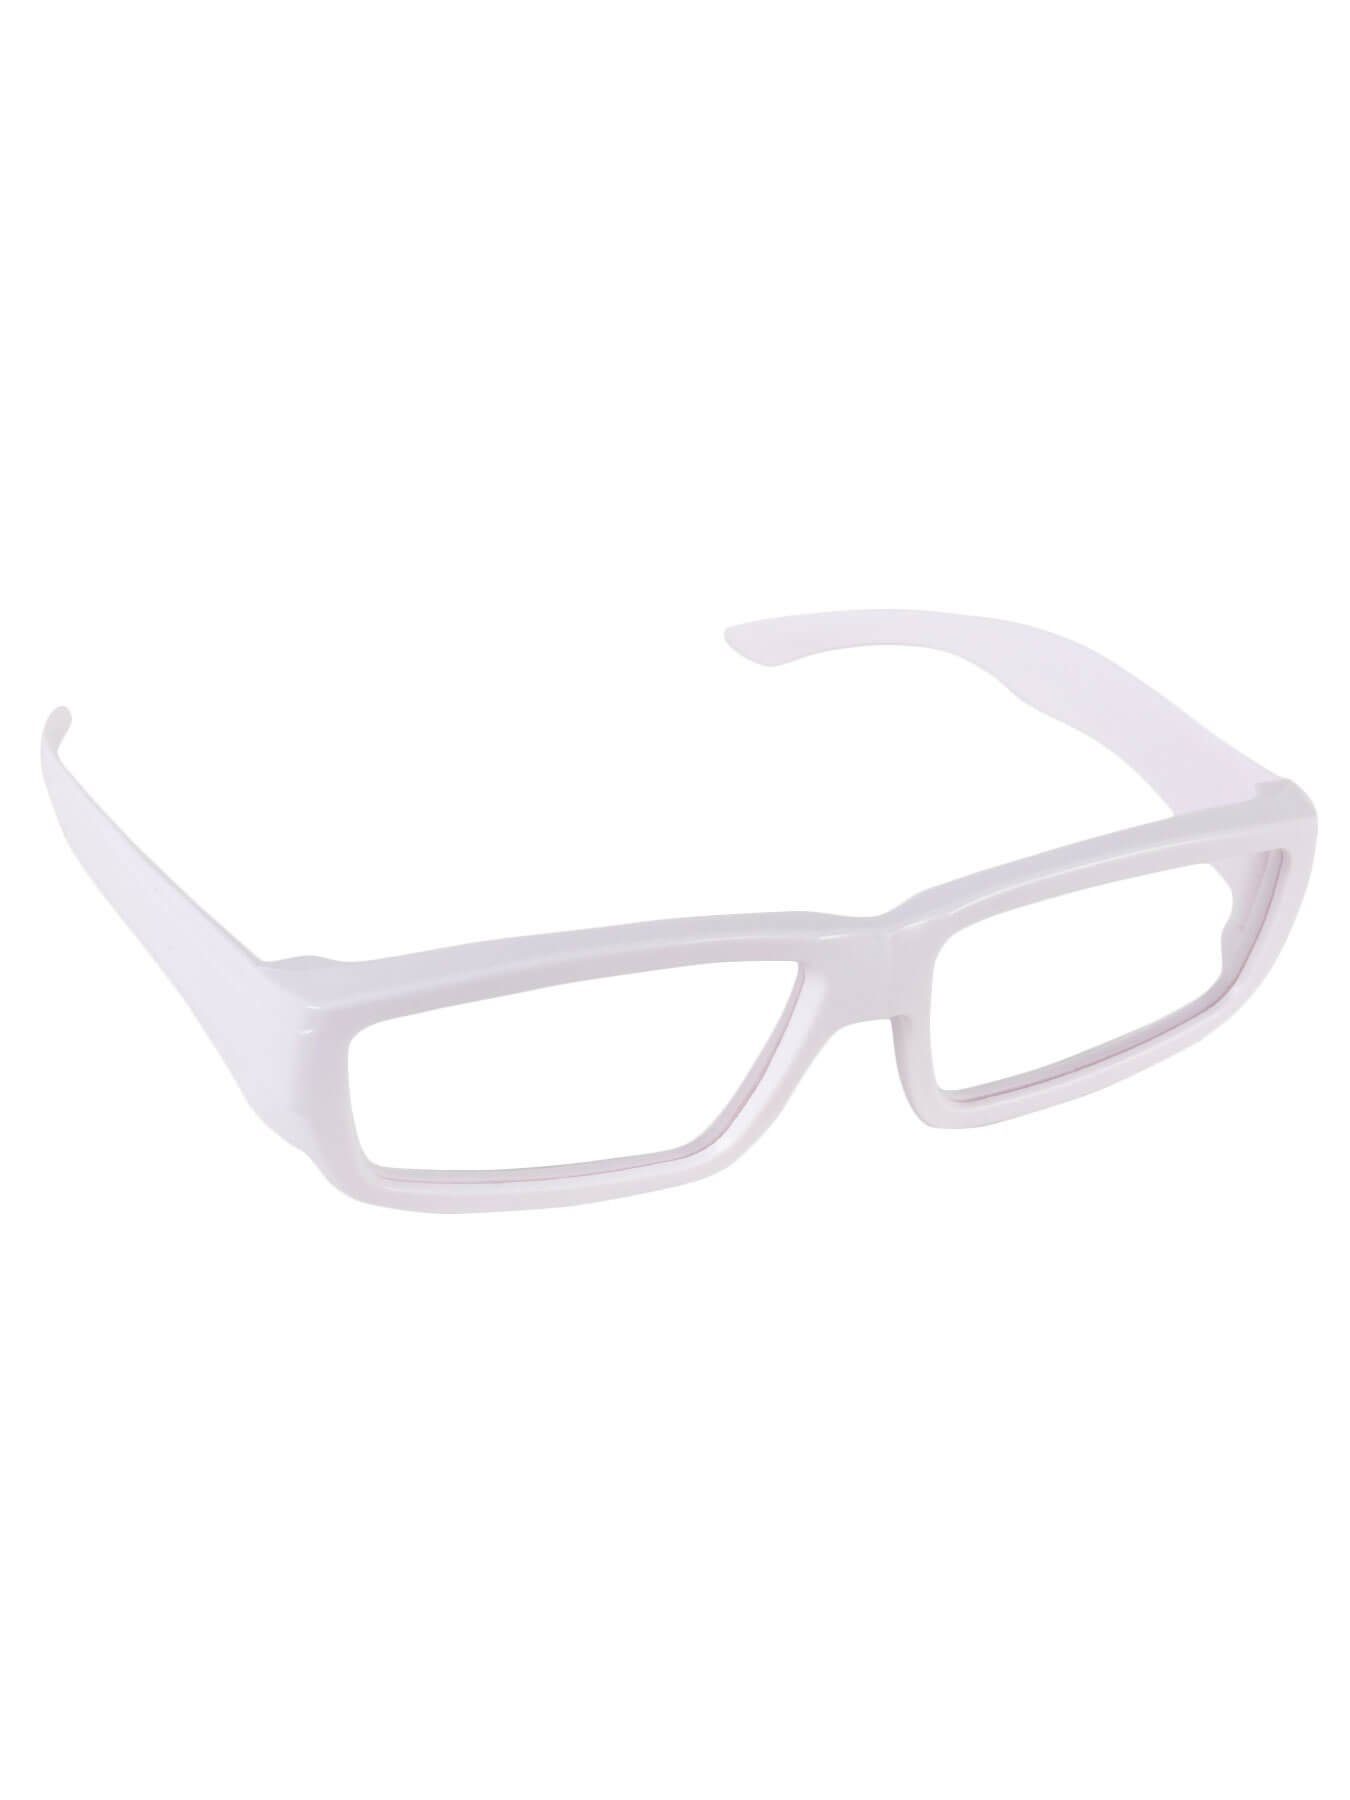 PSYWORK 3D-Brille Eckig ChromaDepth 3D-Brille Schwarzlicht Weiß